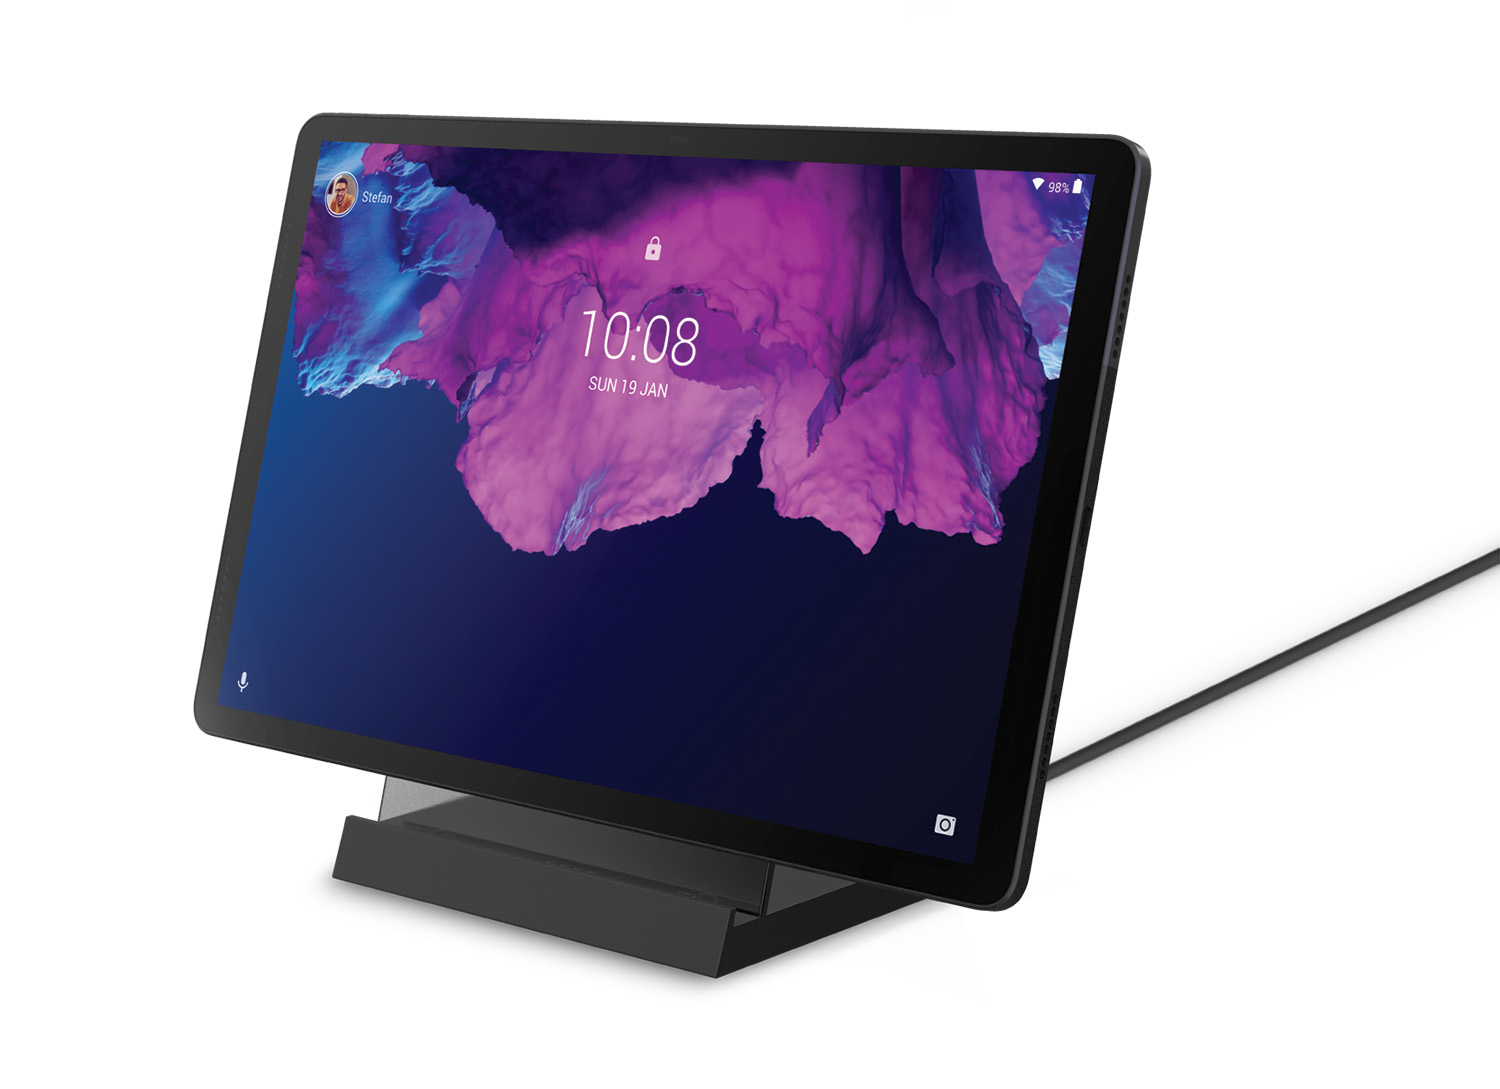 Una tablet Lenovo Tab P11 apoyada en la base de carga, Smart Charging Station 2, sobre un fondo blanco. El nivel de la batería de la tableta es del 98% y la hora que se muestra en la pantalla es 10:08.